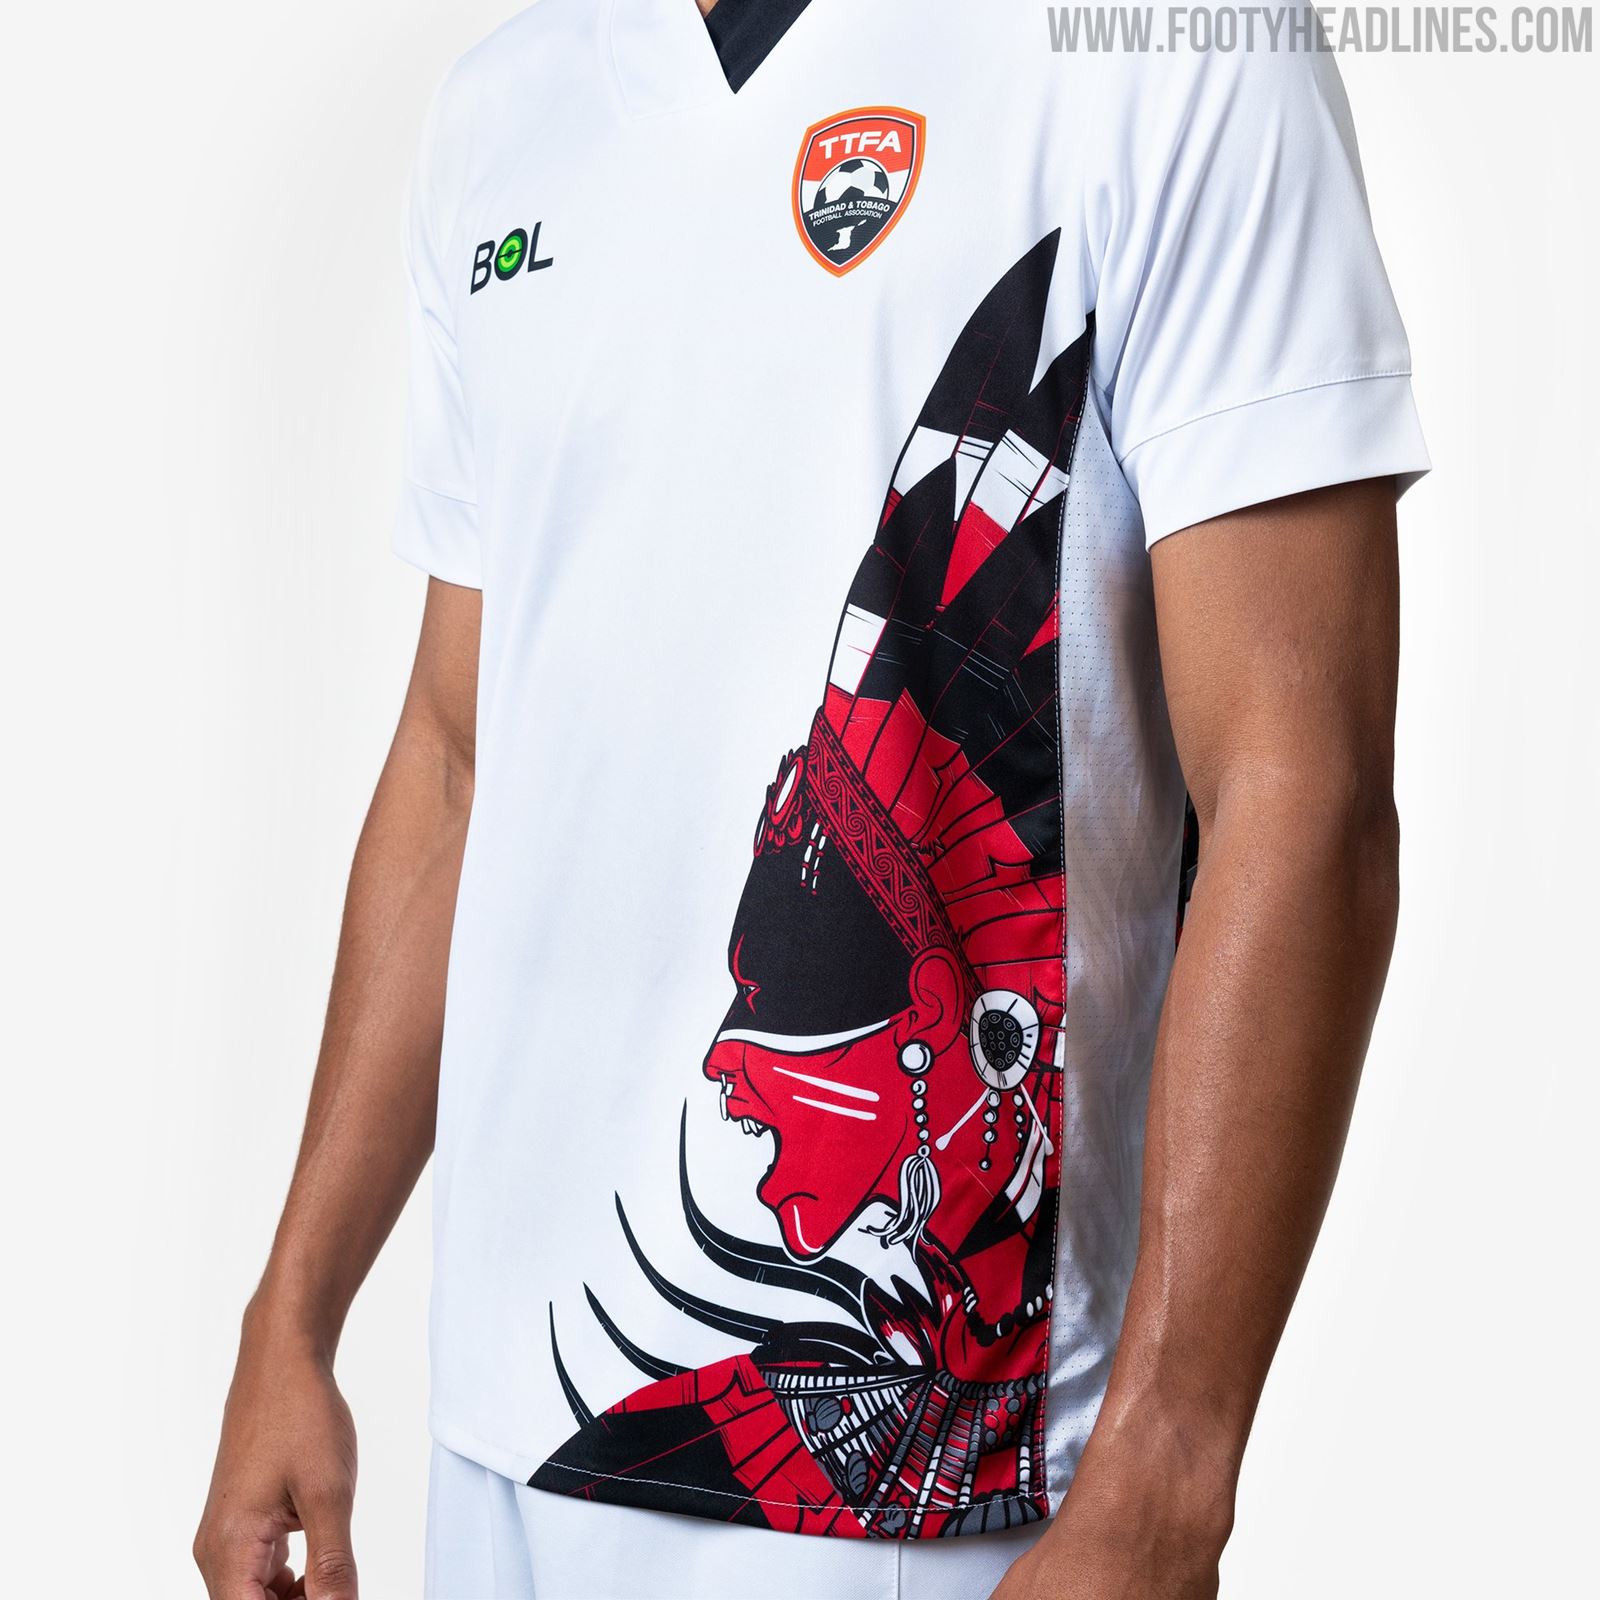 Trinidad And Tobago ttfajlgblk Football T-Shirt